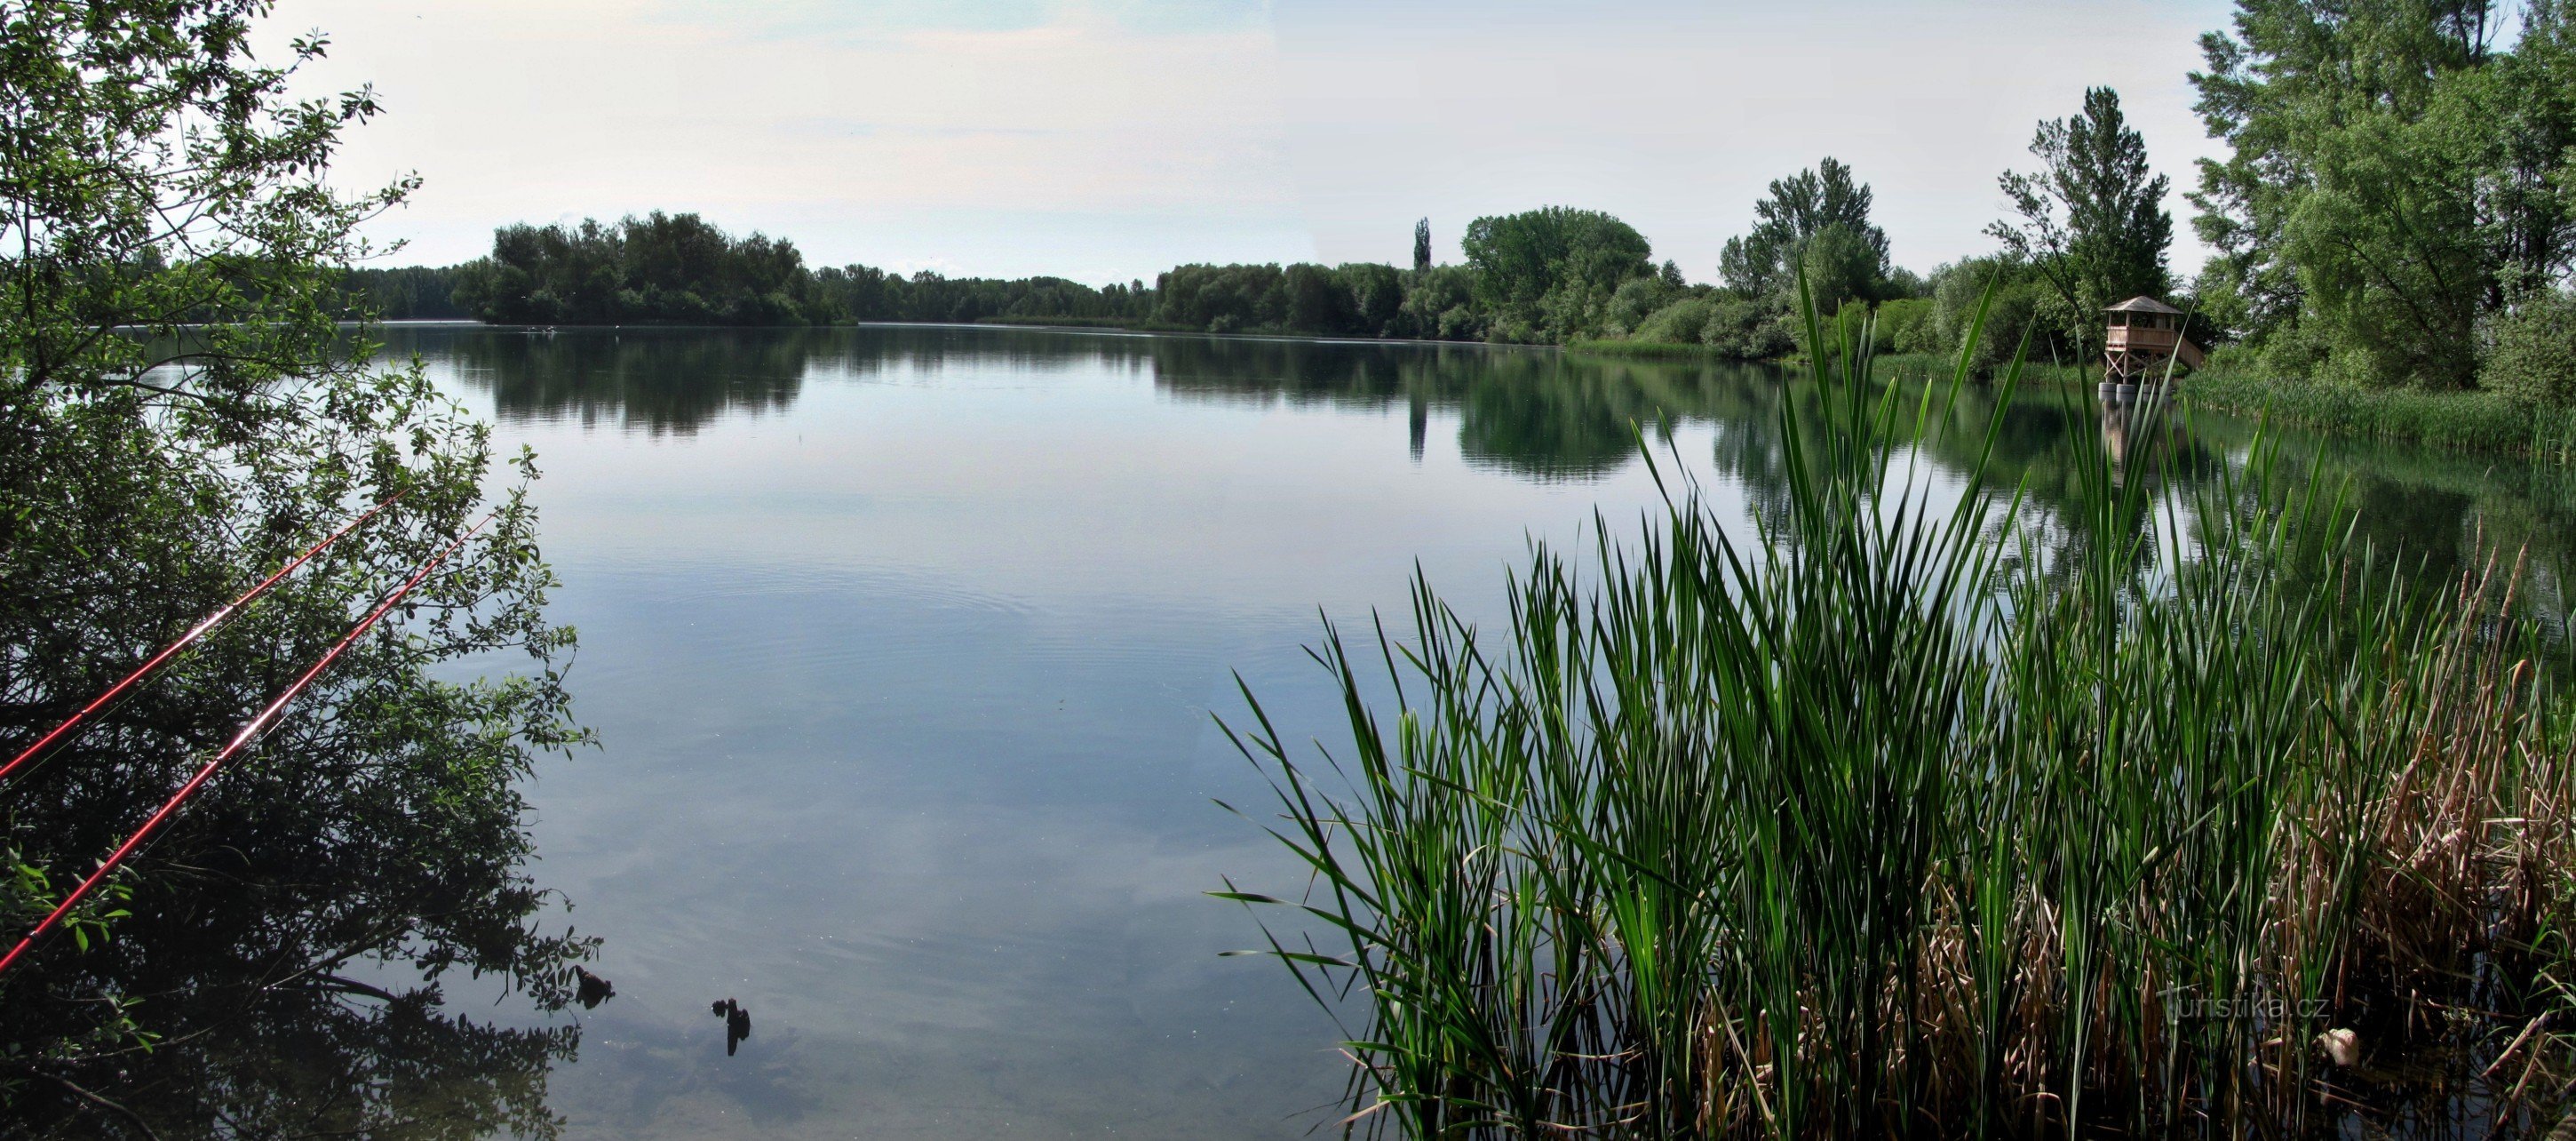 Chomoutov (lângă Olomouc) - observator de păsări de pe lacul Chomoutov